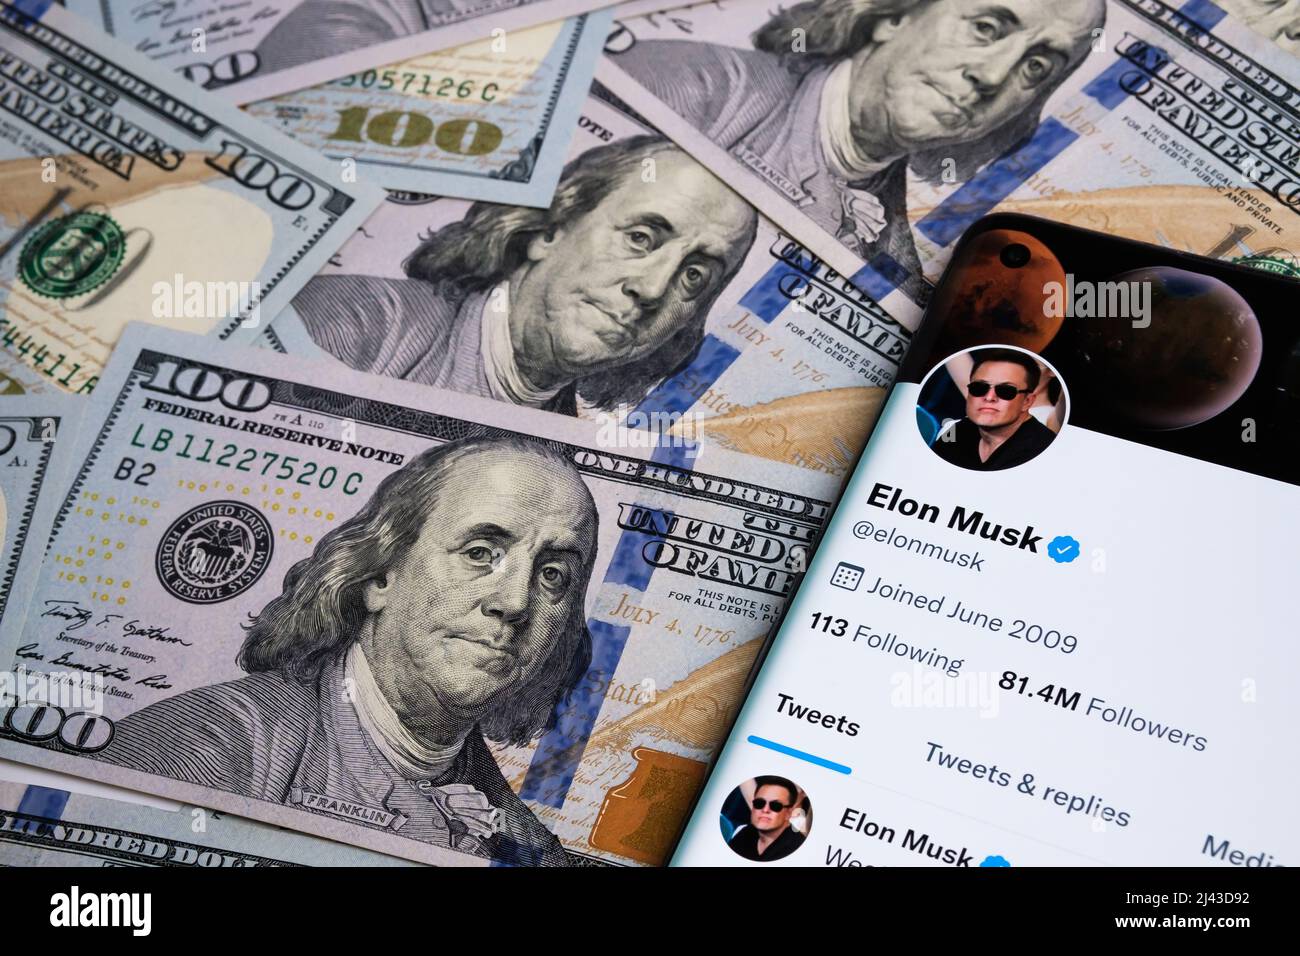 Offizielle Twitter-Account-Seite von Elon Musk auf dem Smartphone, das auf dem Stapel von Dollar-Banknoten platziert ist. Konzept. Selektiver Fokus. Stafford, Stockfoto